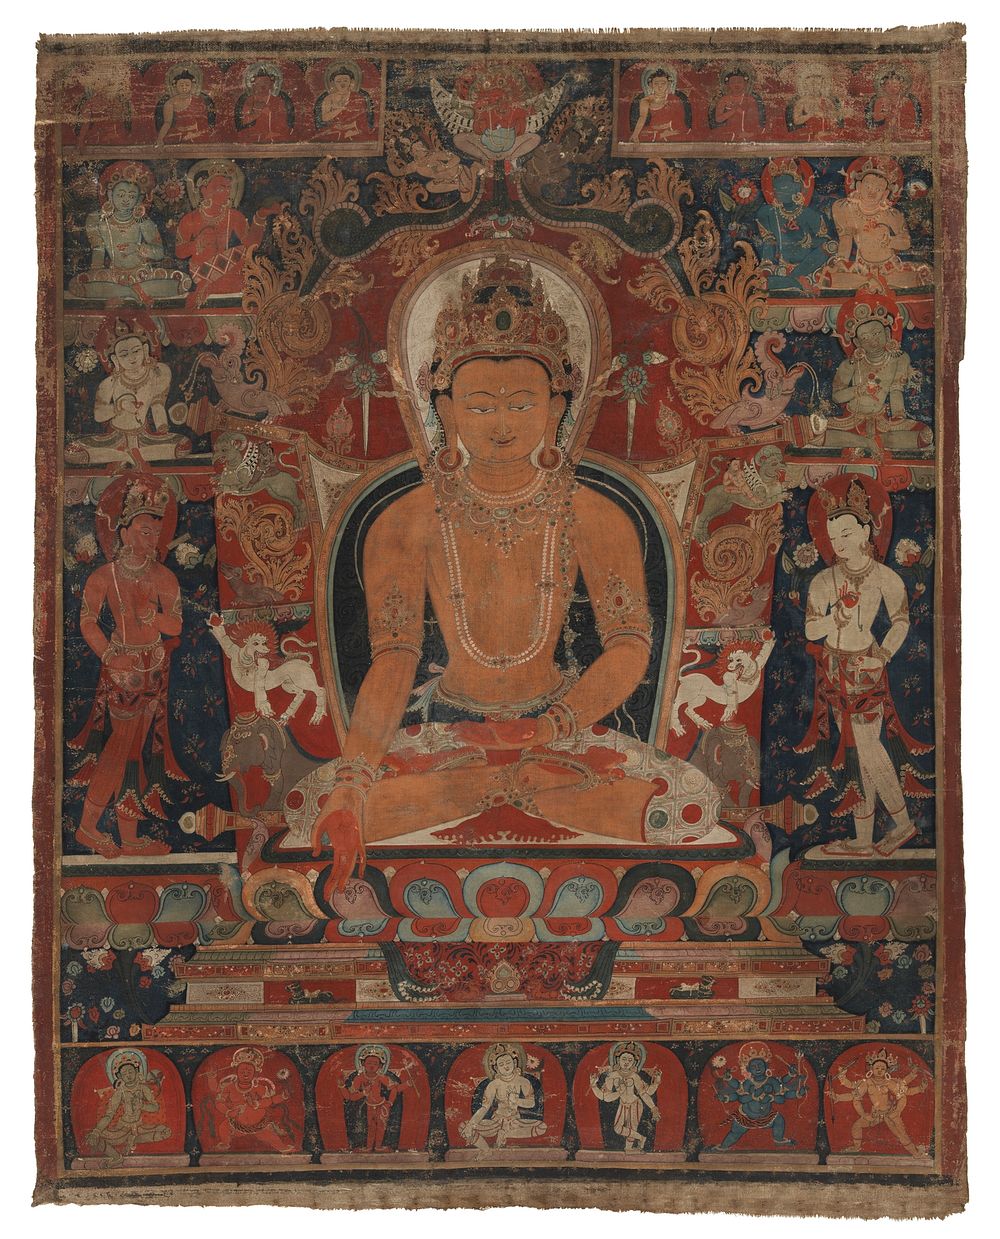 The Jina Buddha Ratnasambhava